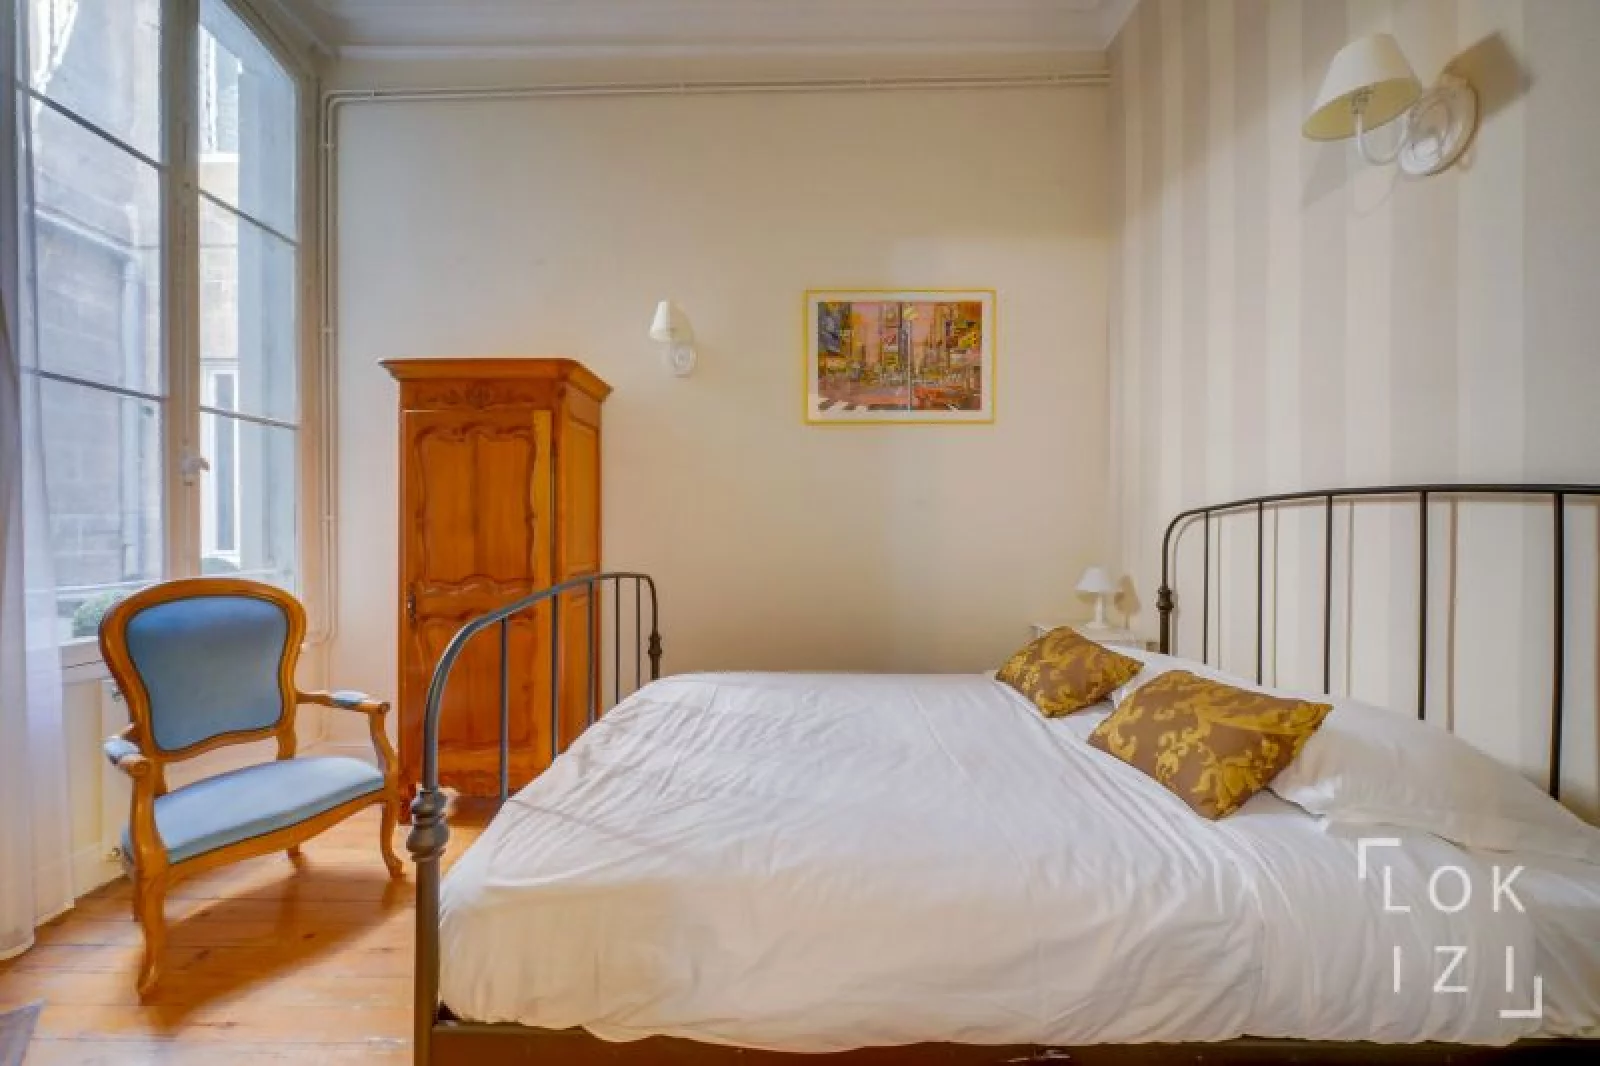 Location appartement meublé 3 pièces 73m² (Bordeaux centre / Gambetta)